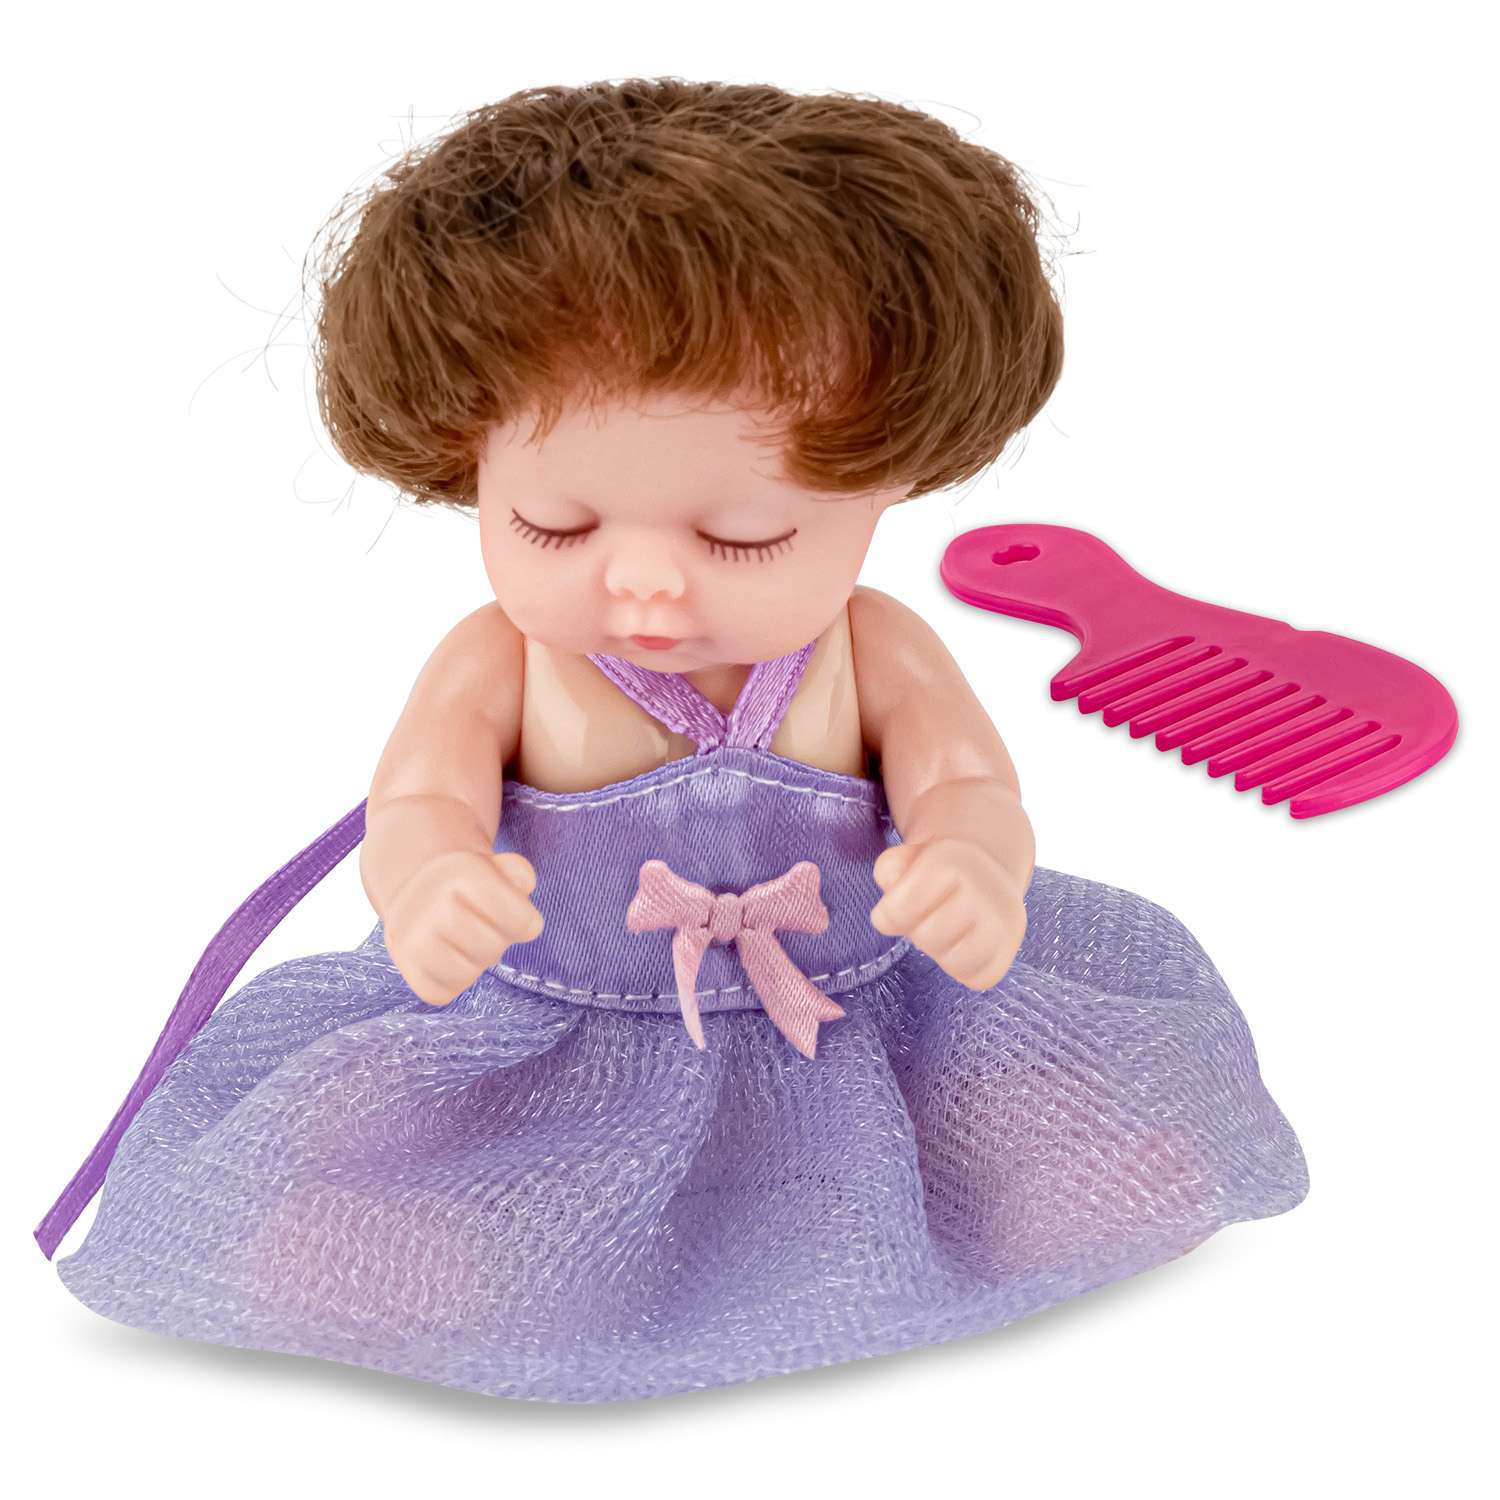 Кукла-младенец DollyToy с расчёской 11.5 см в шаре фиолетовый DOL0804-114//фиолетовый - фото 2